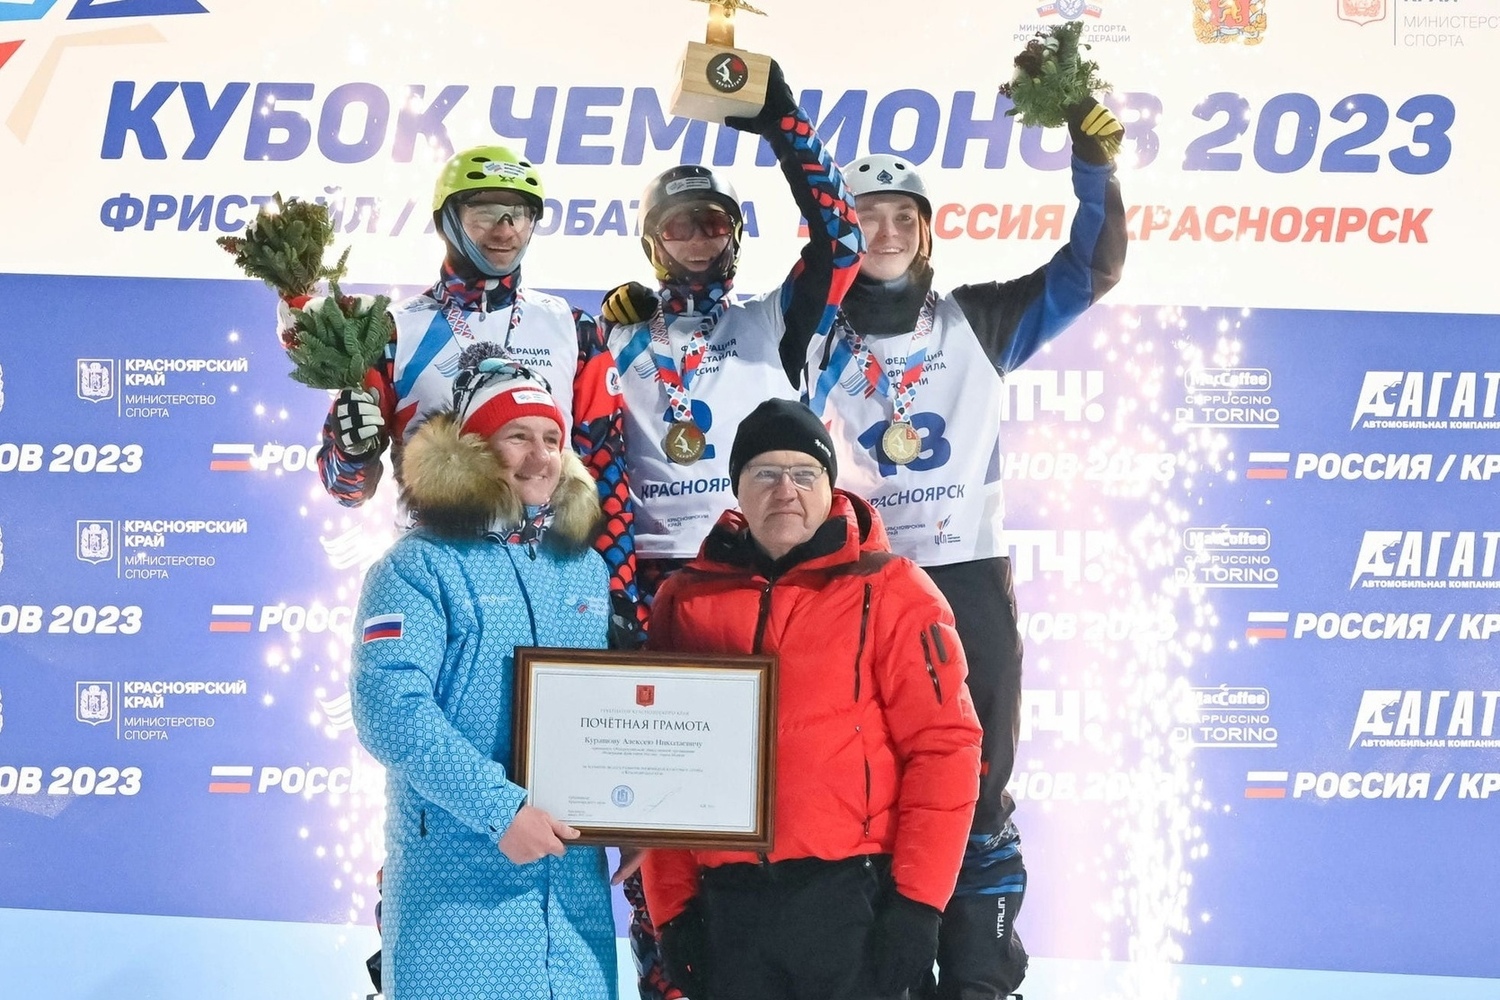 Ярославские спортсмены с триумфом выступили на этапе Кубка чемпионов по фристайлу